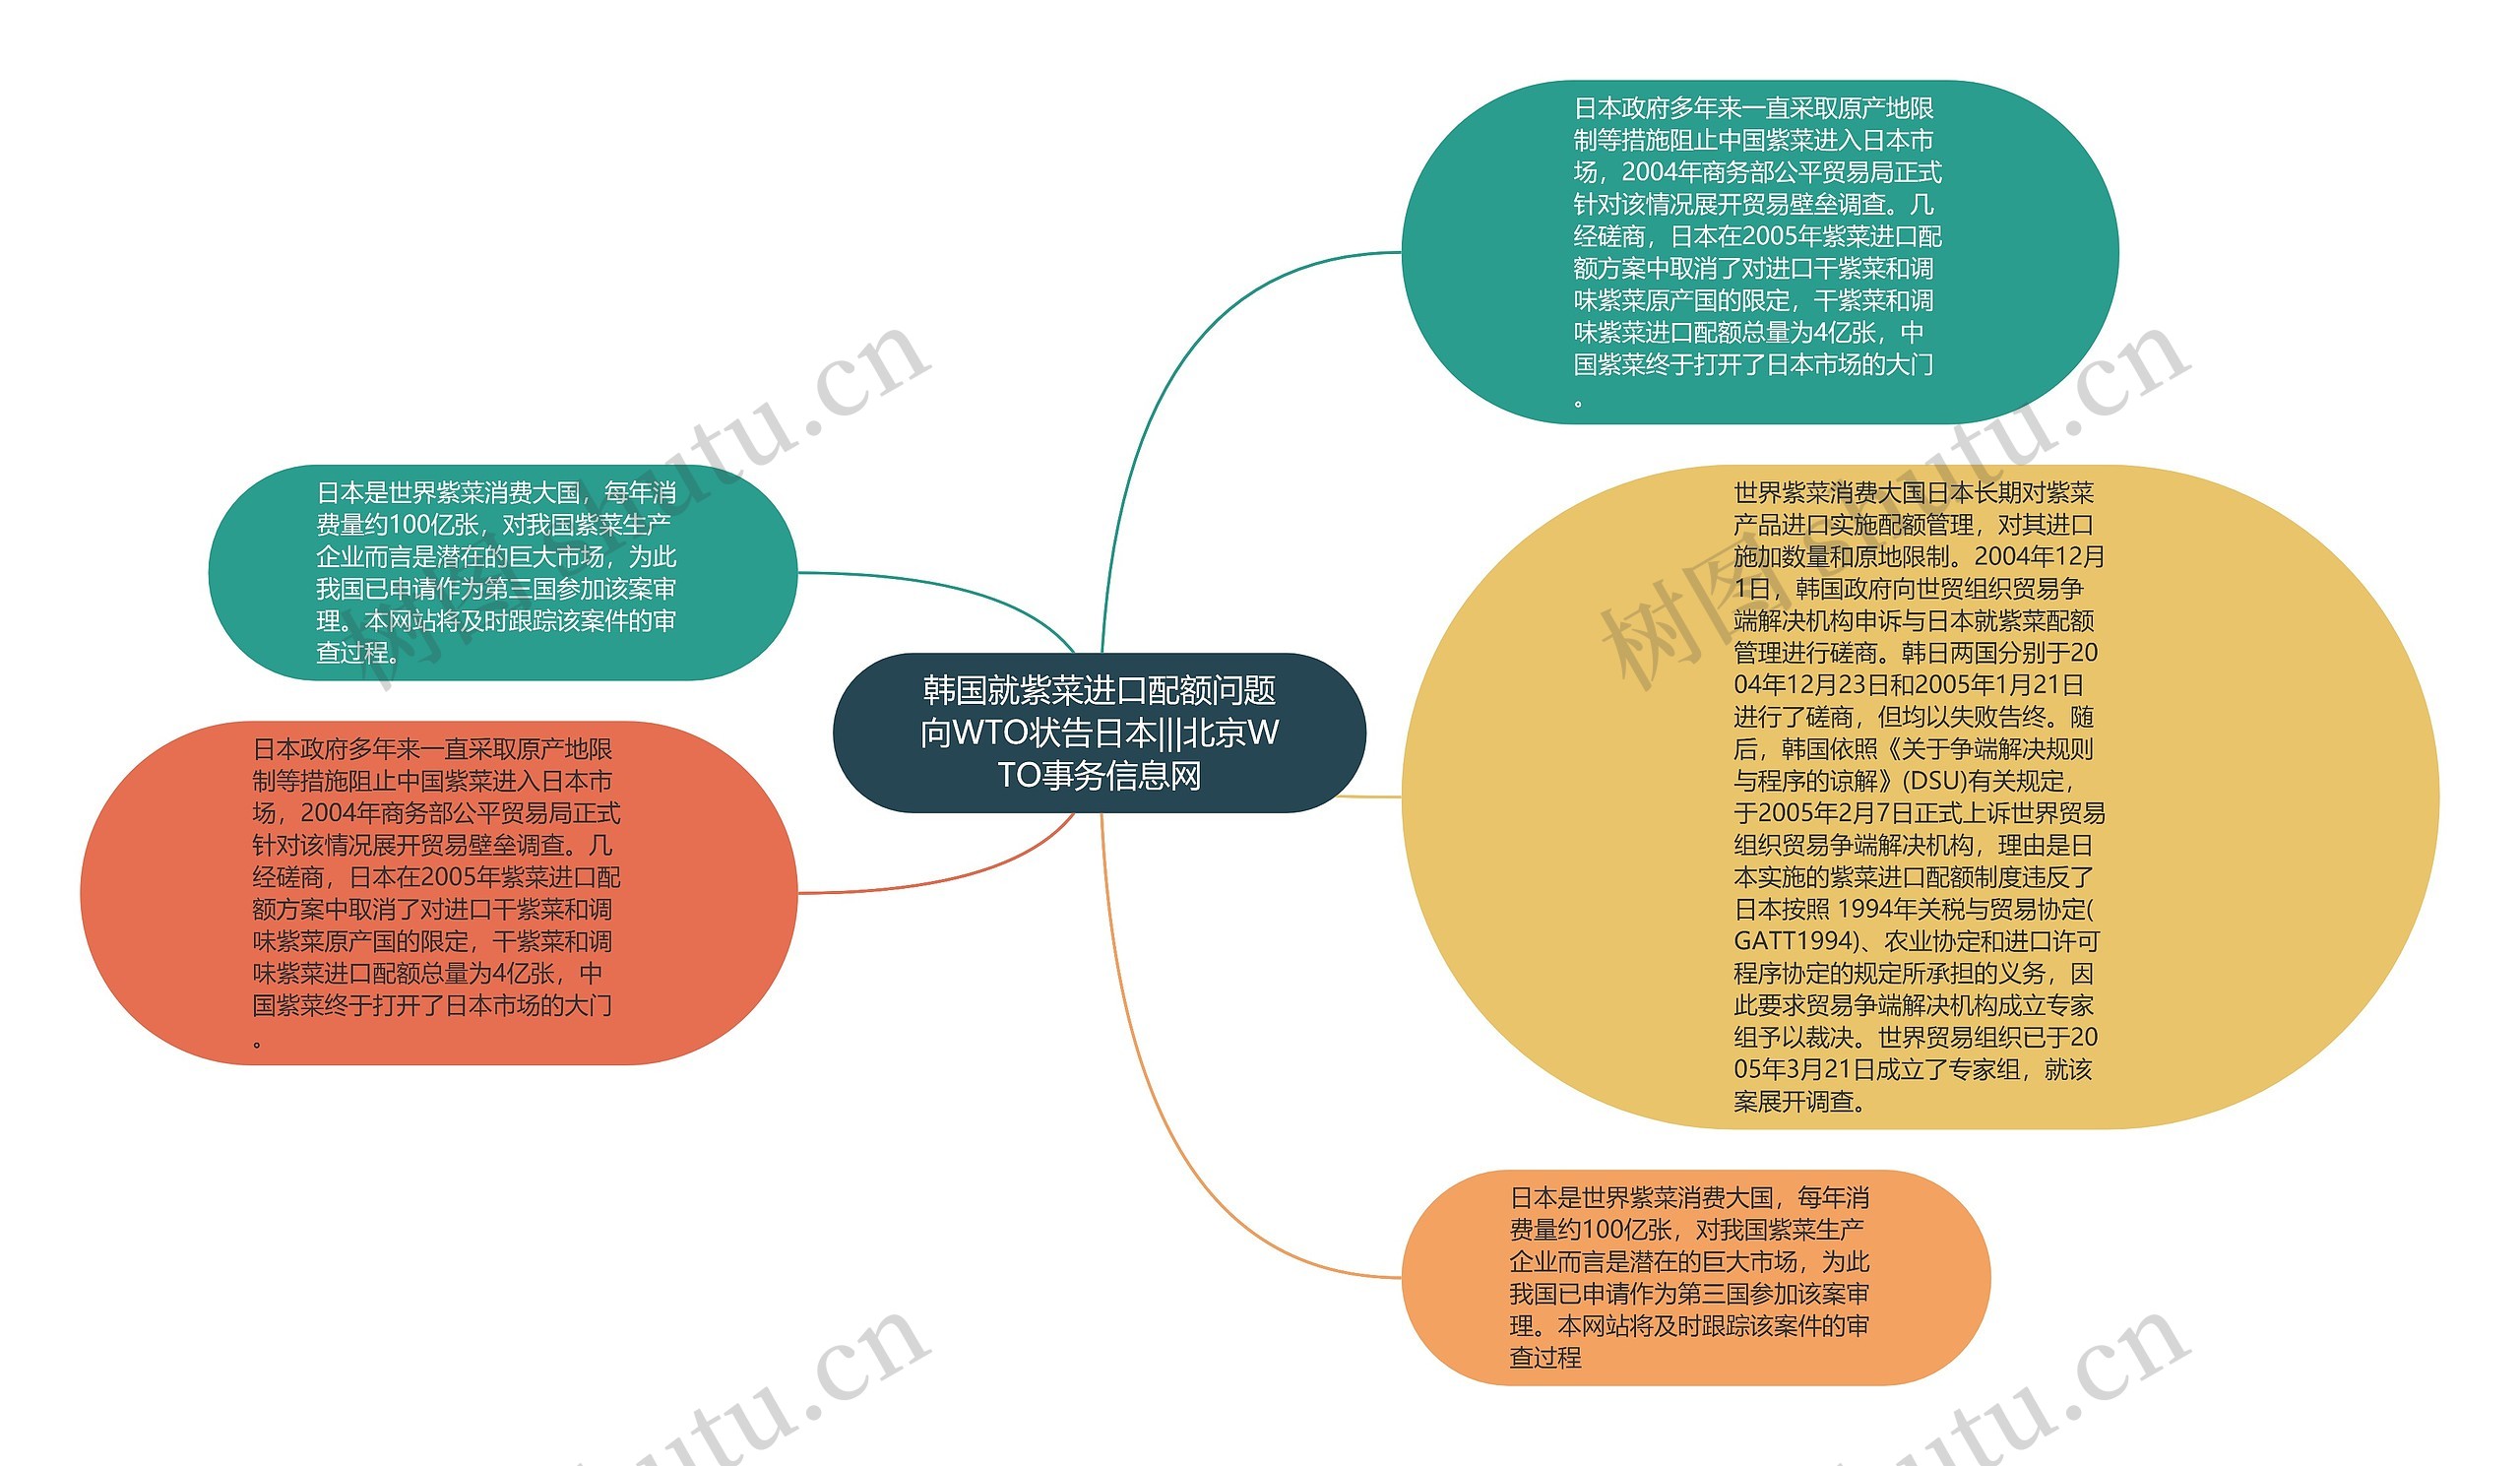 韩国就紫菜进口配额问题向WTO状告日本|||北京WTO事务信息网思维导图